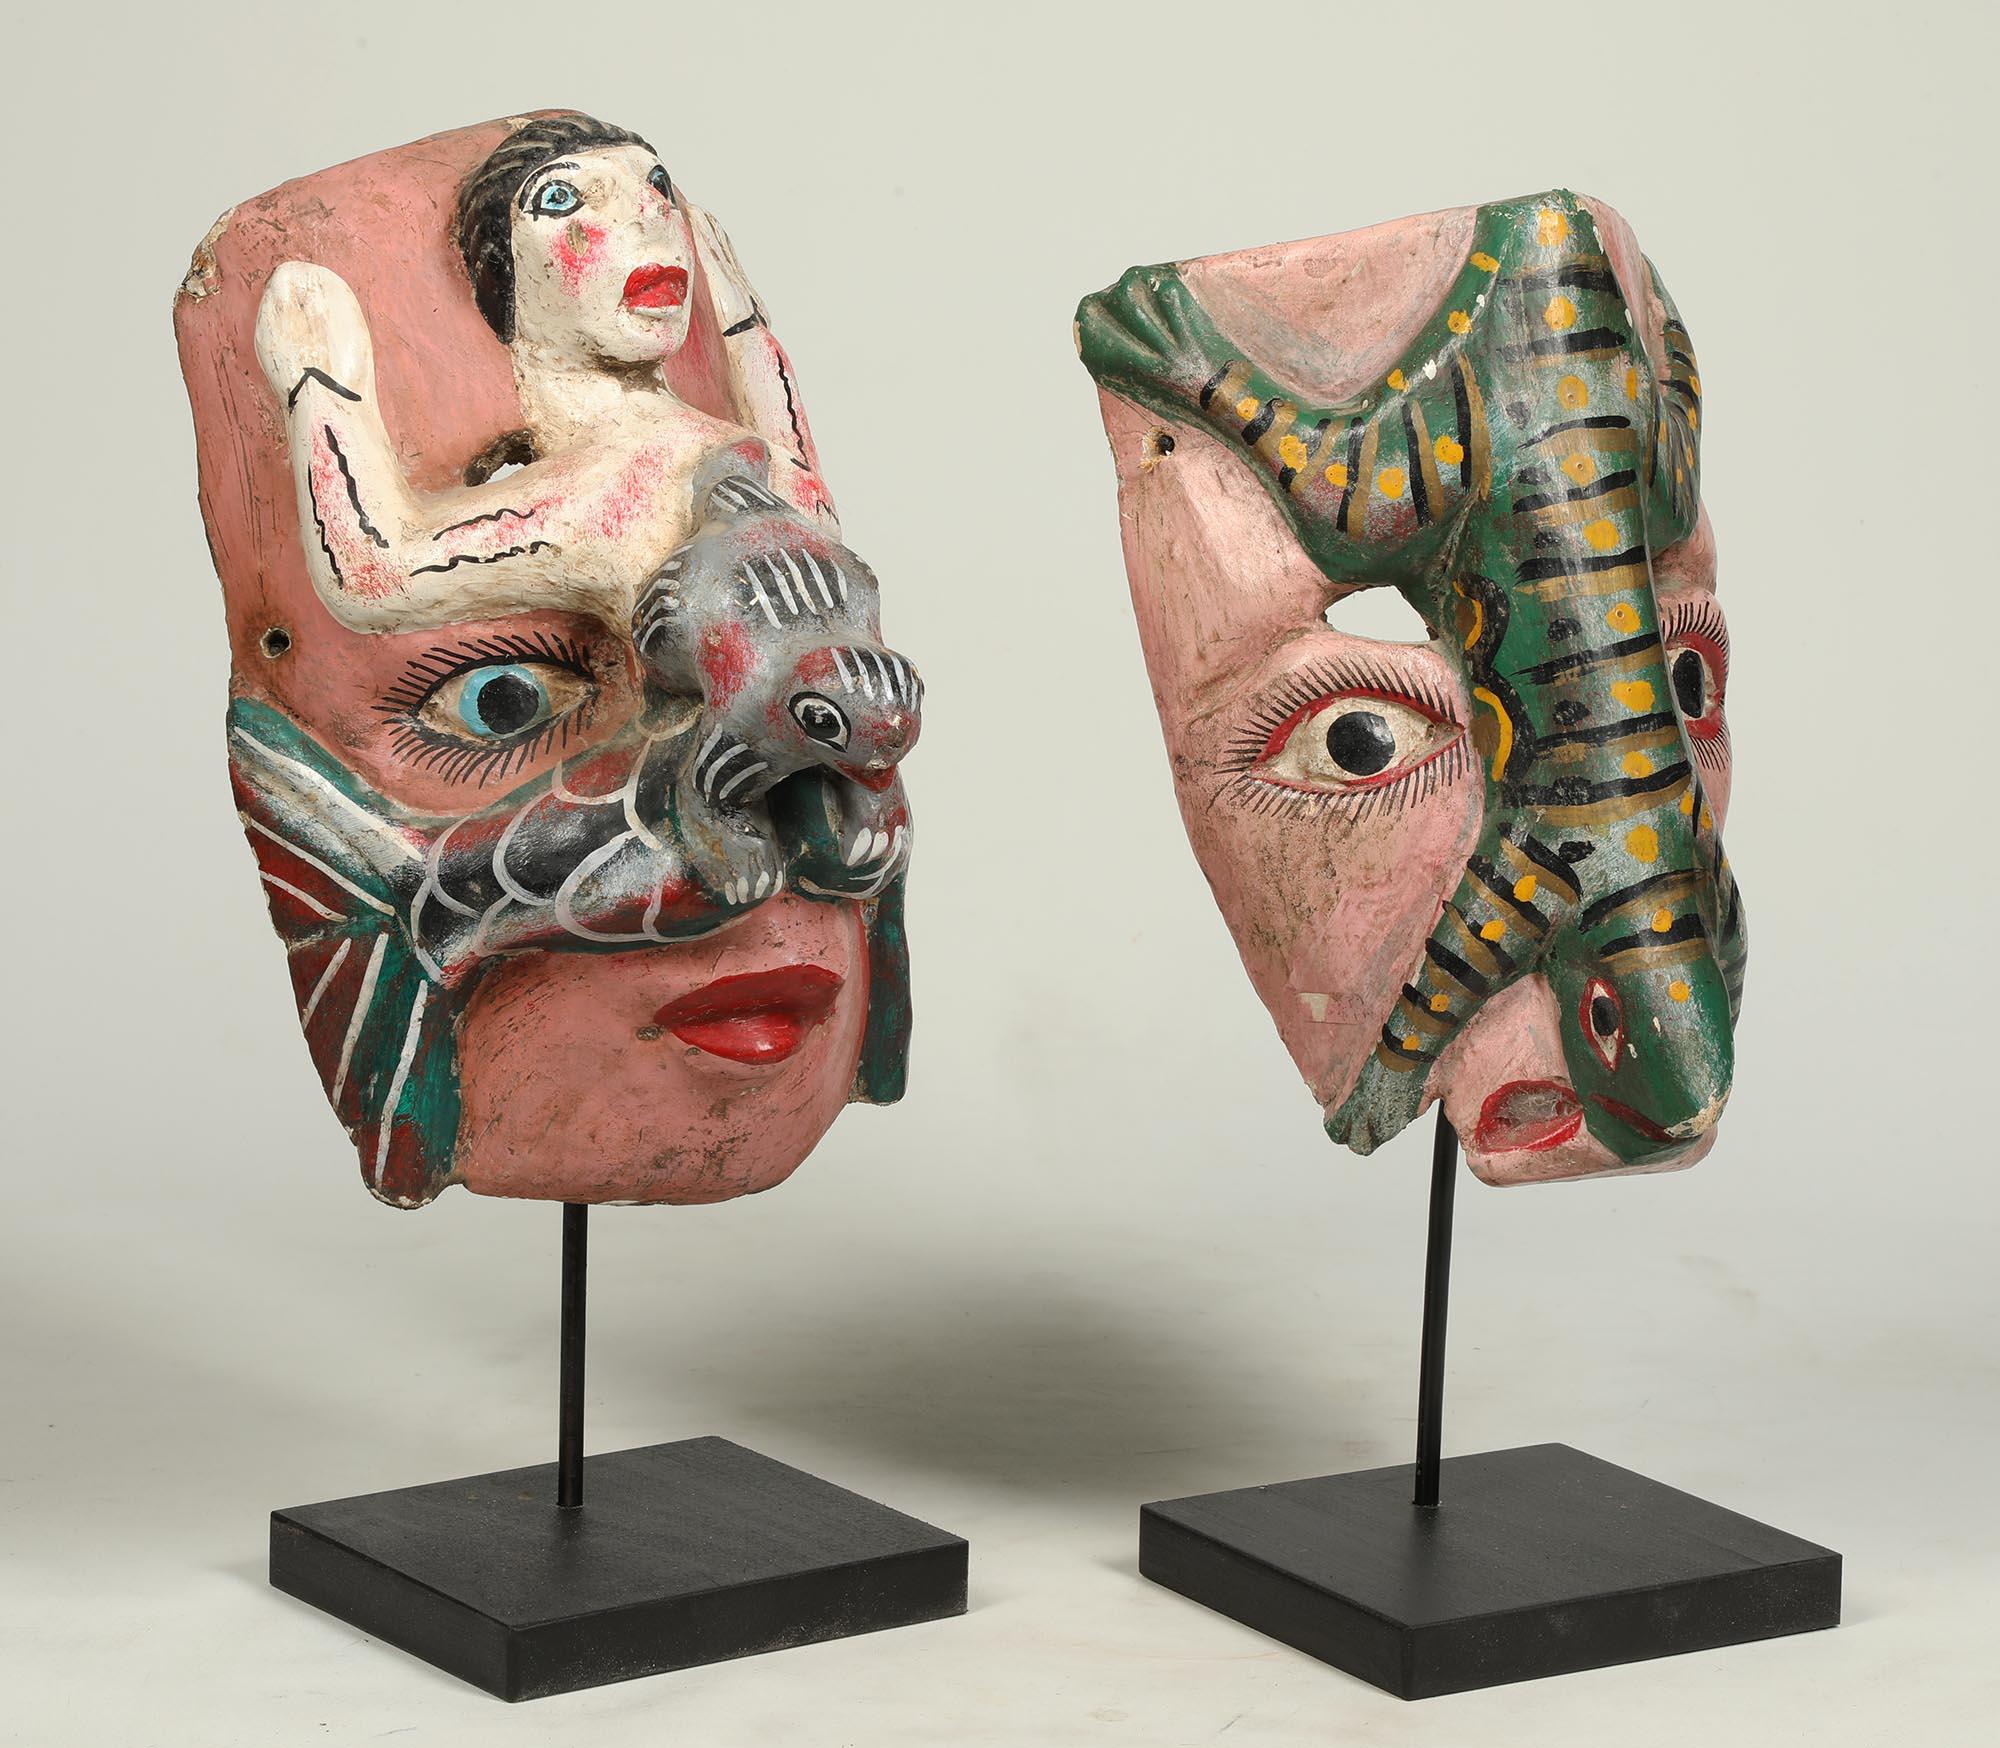 Groupe de deux masques de danse mexicains en bois peint polychrome datant du milieu du 20e siècle.  Chacun avec un visage, l'un avec un lézard sur le dessus et l'autre avec une sirène.  Quelques éclats, usure et assombrissement de l'intérieur.
Le